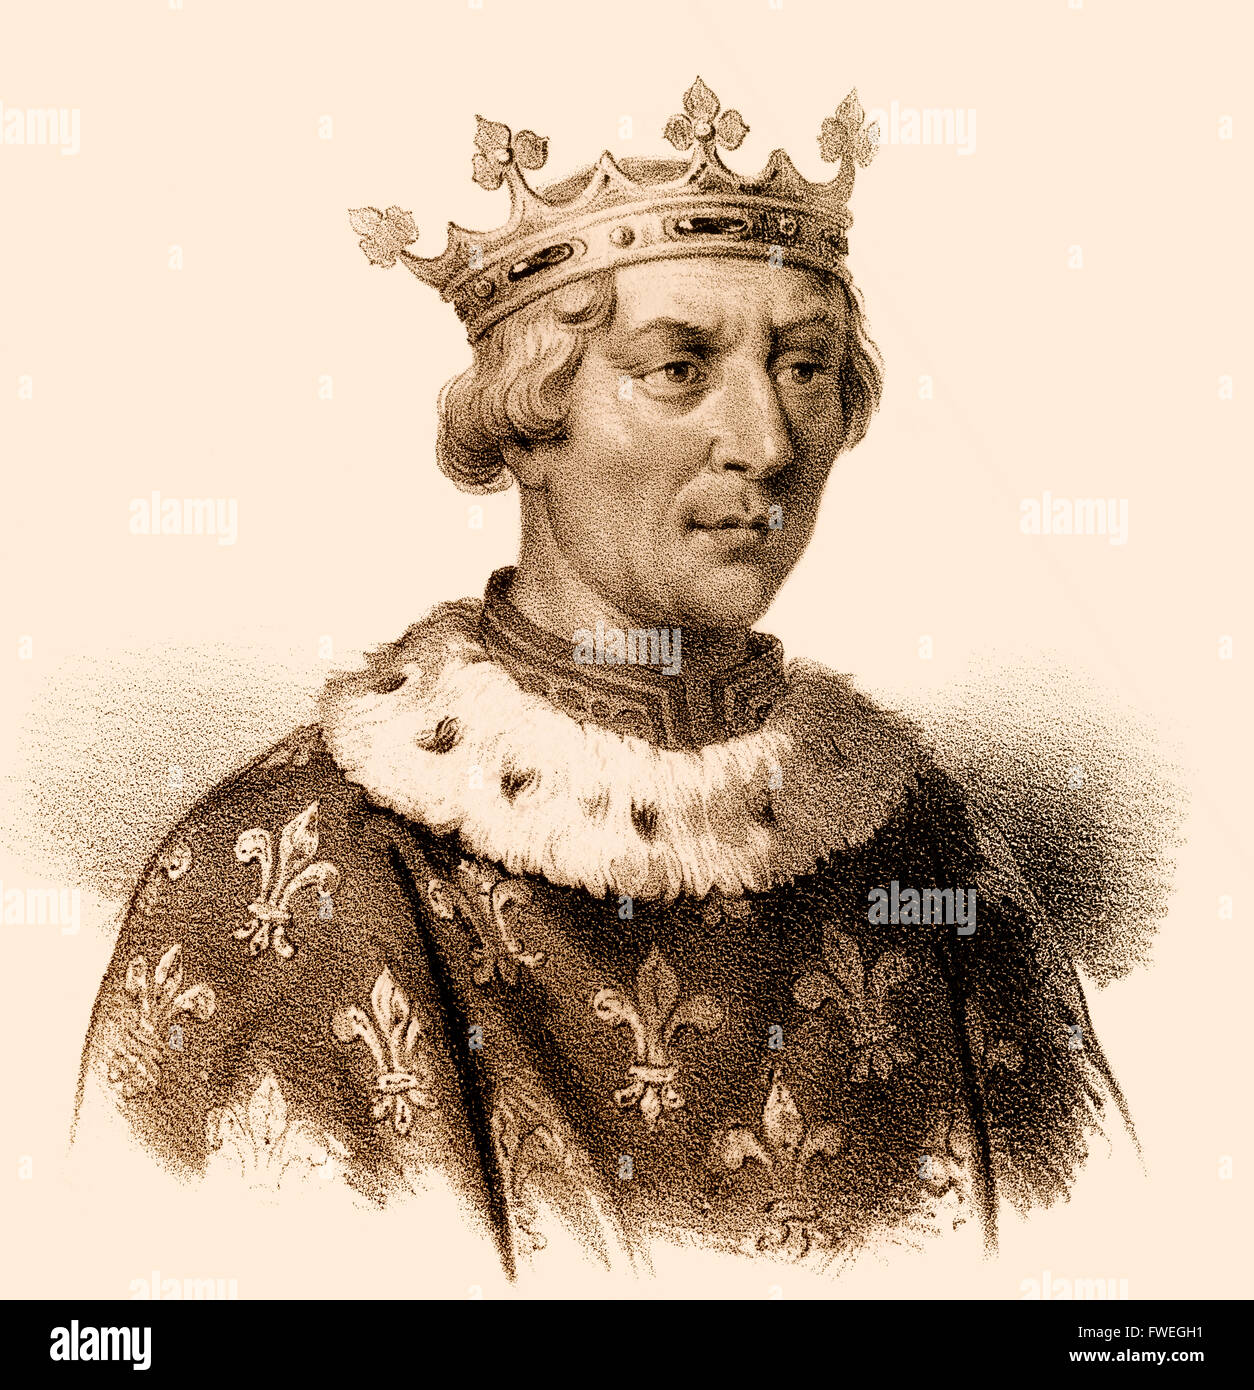 Luigi VIII il leone, Ludwig VIII., 1187-1226, re di Francia dalla casa di Capet, re d'Inghilterra Foto Stock